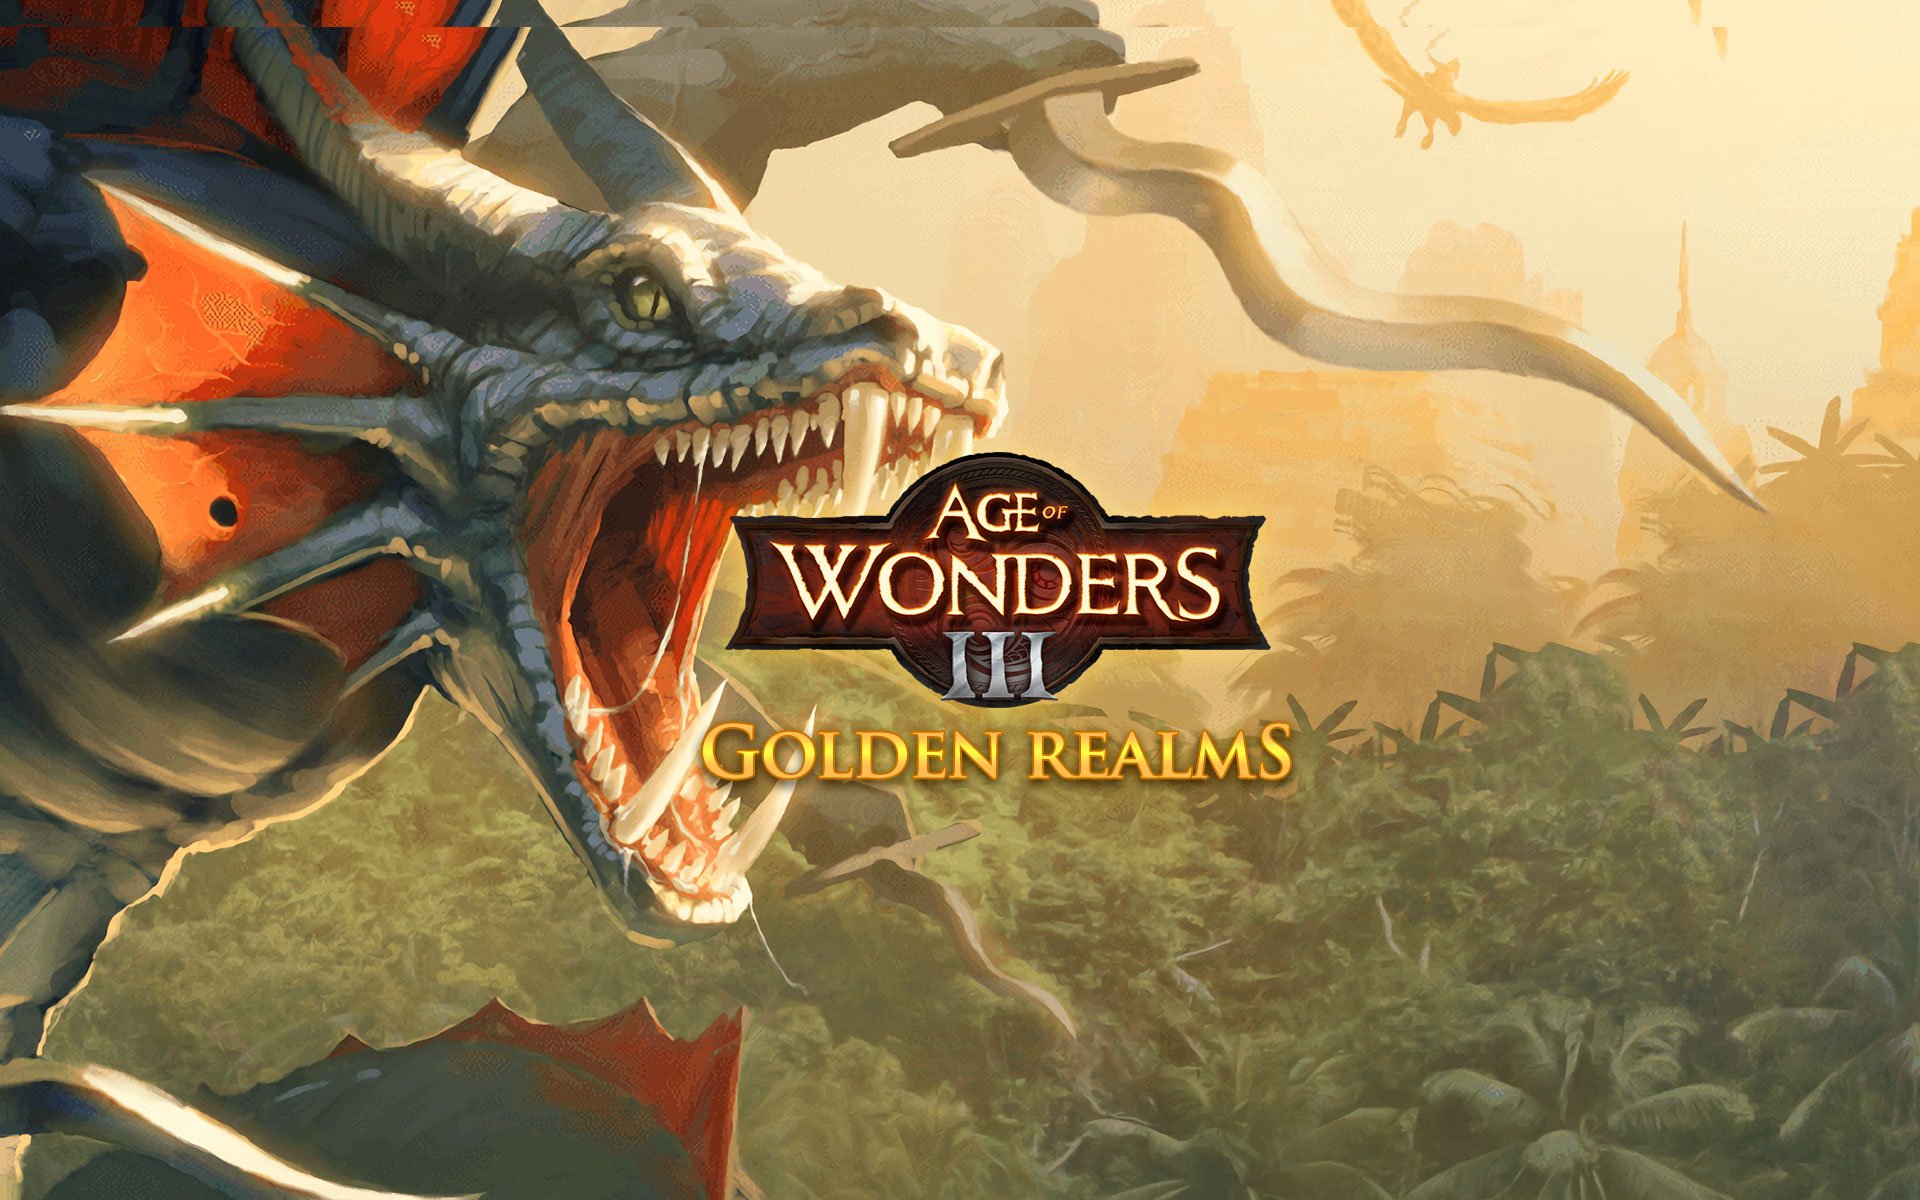 Compre Age of Wonders a partir de R$ 23.99